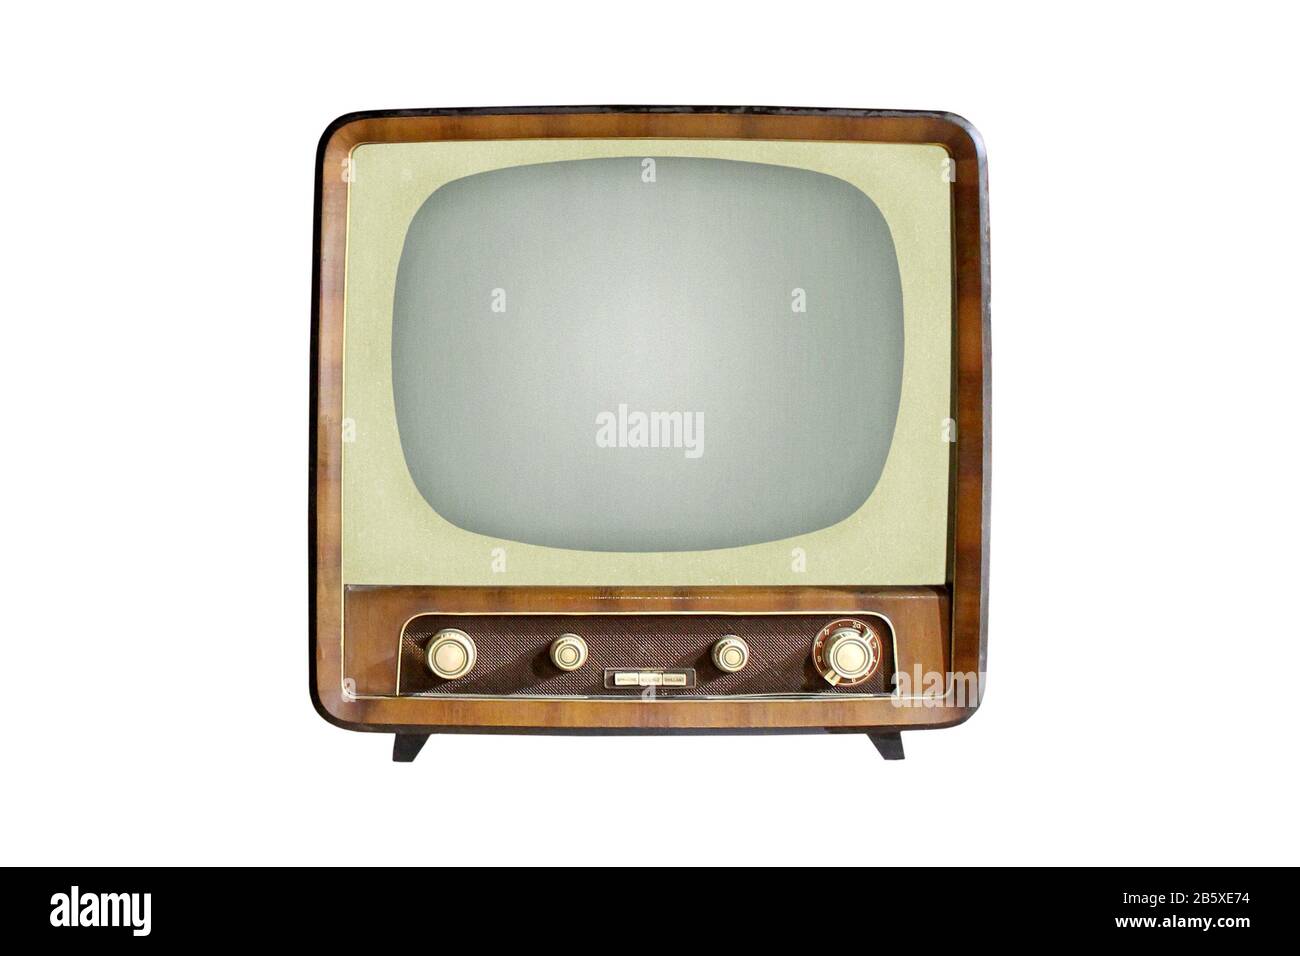 Téléviseur CRT vintage isolé sur fond blanc, technologie de télévision analogique rétro Banque D'Images